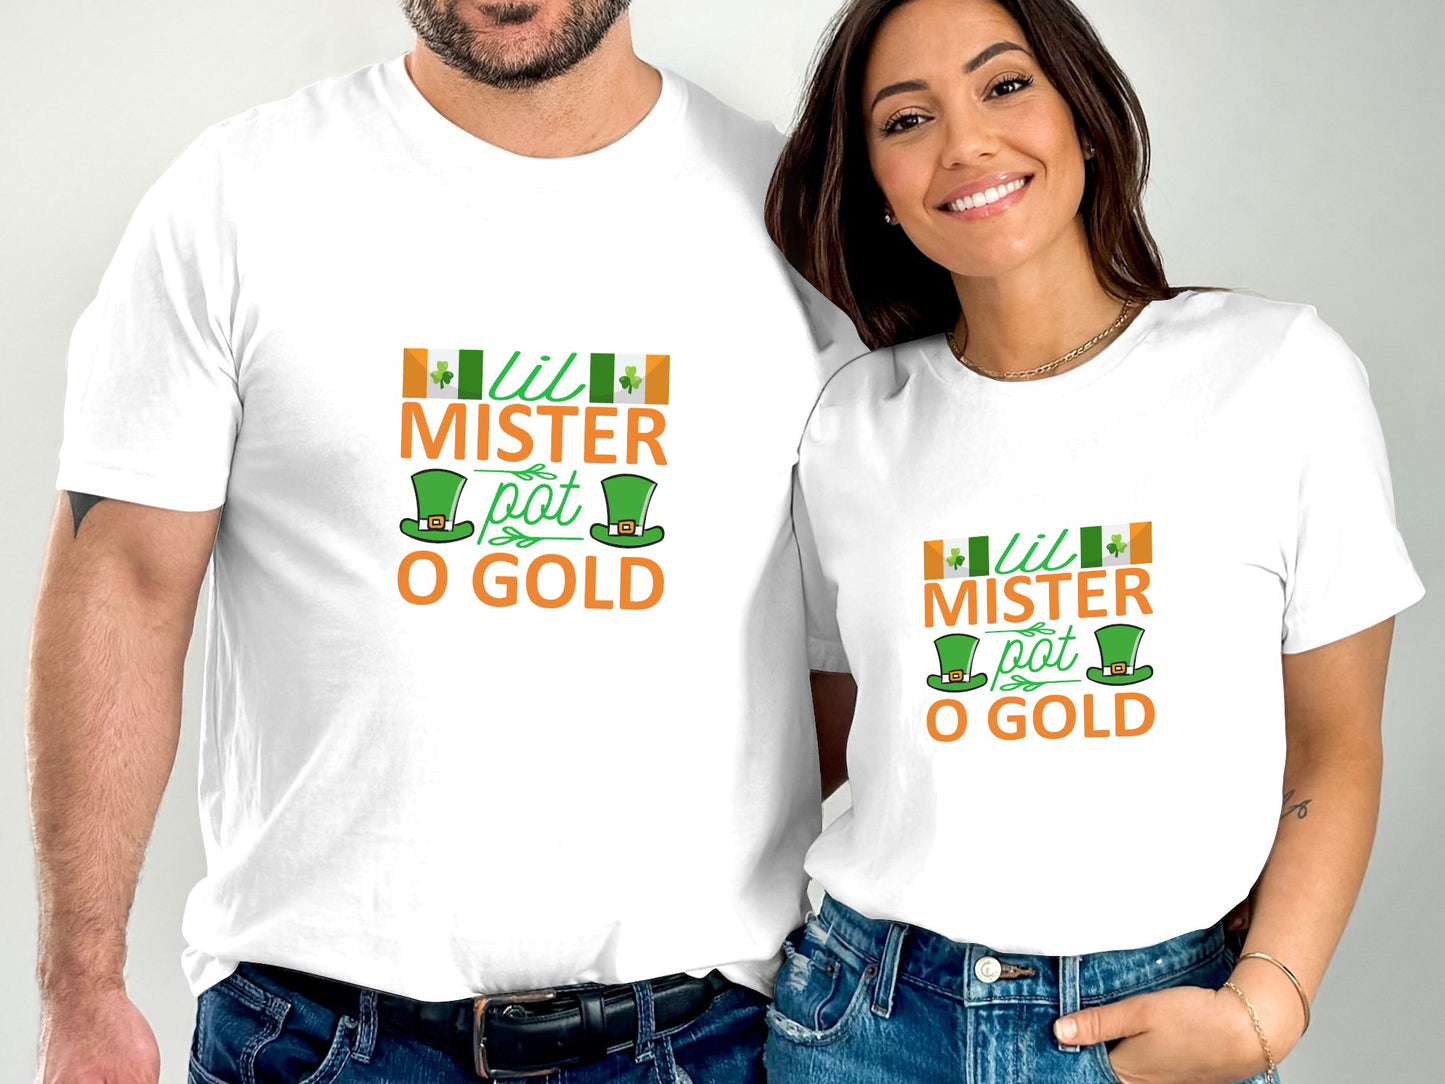 Lil Mister pot o gold (St. Patrick's Day T-shirt)